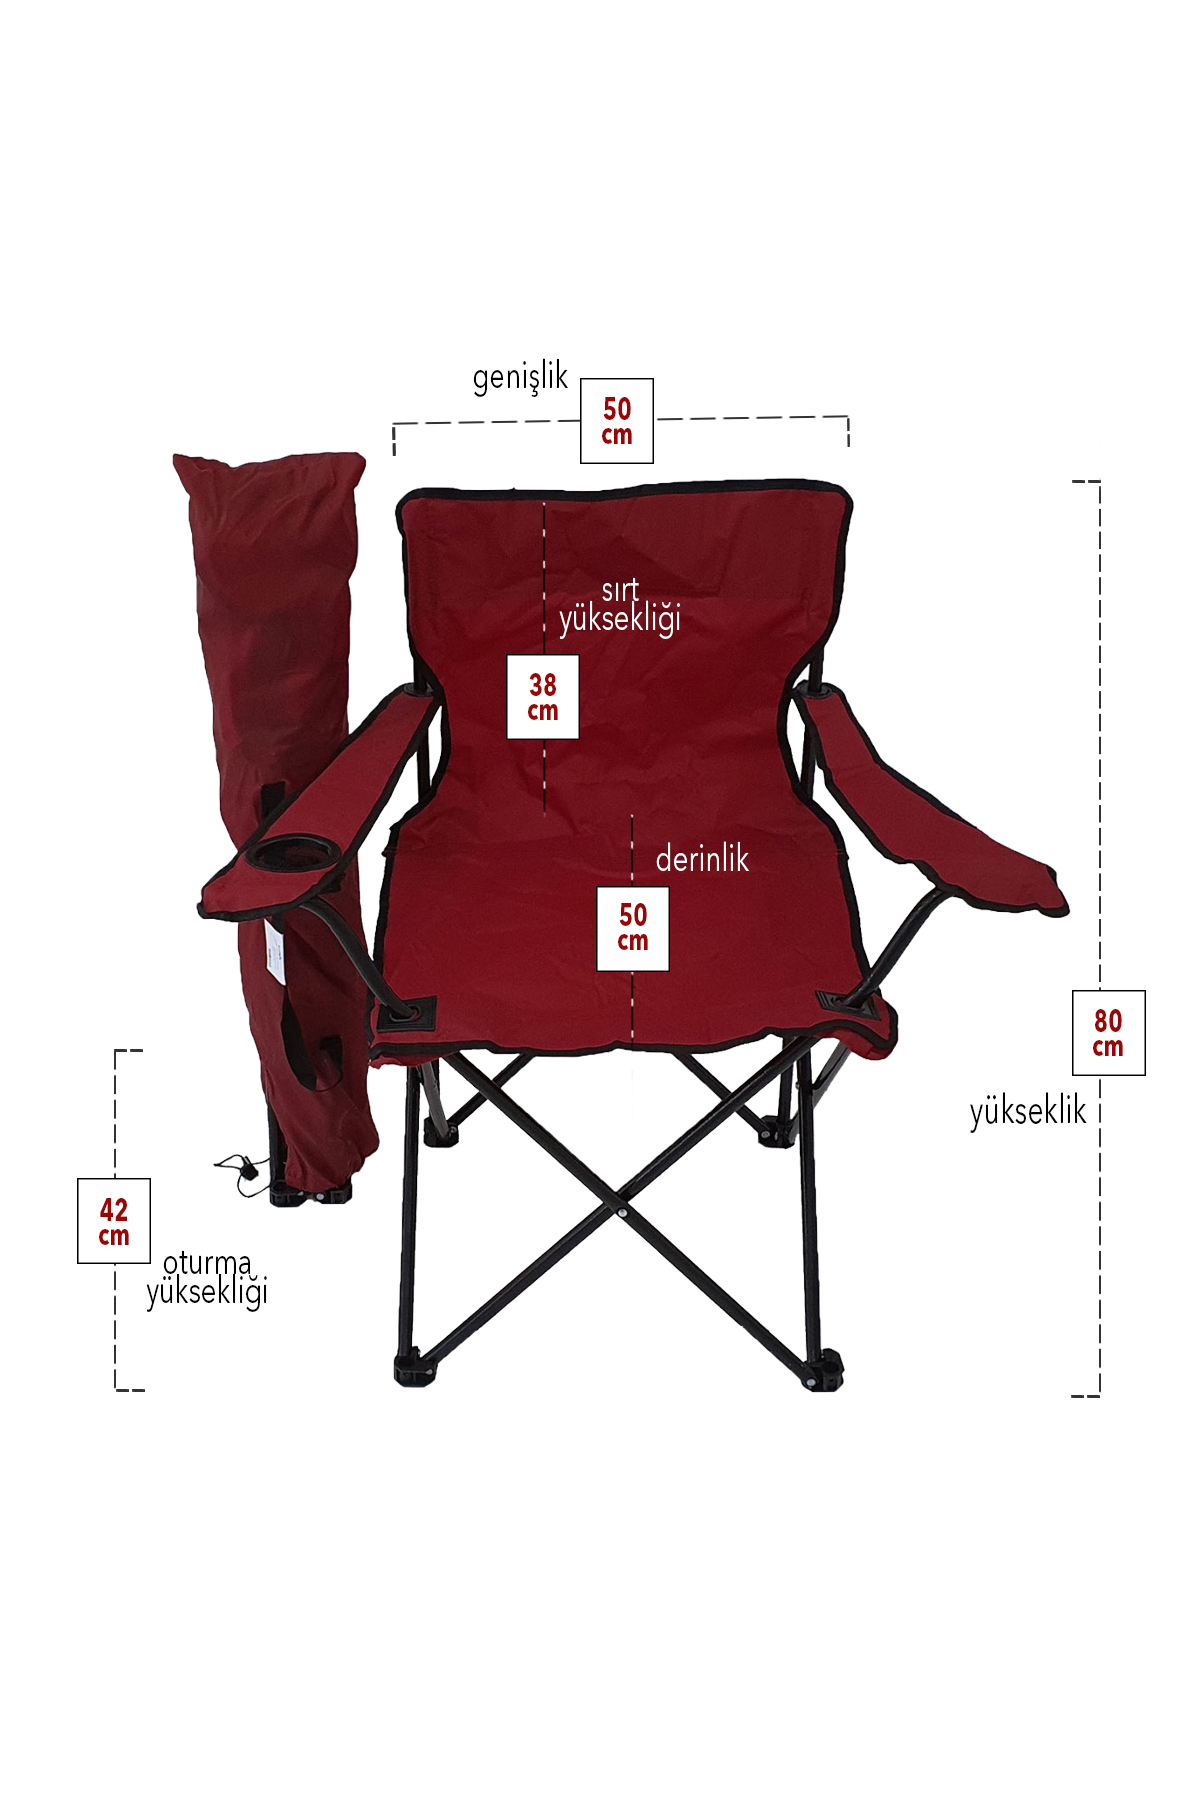 Bofigo Camping Chair Folding Chair Garden Chair Picnic Beach Balcony Chair Red